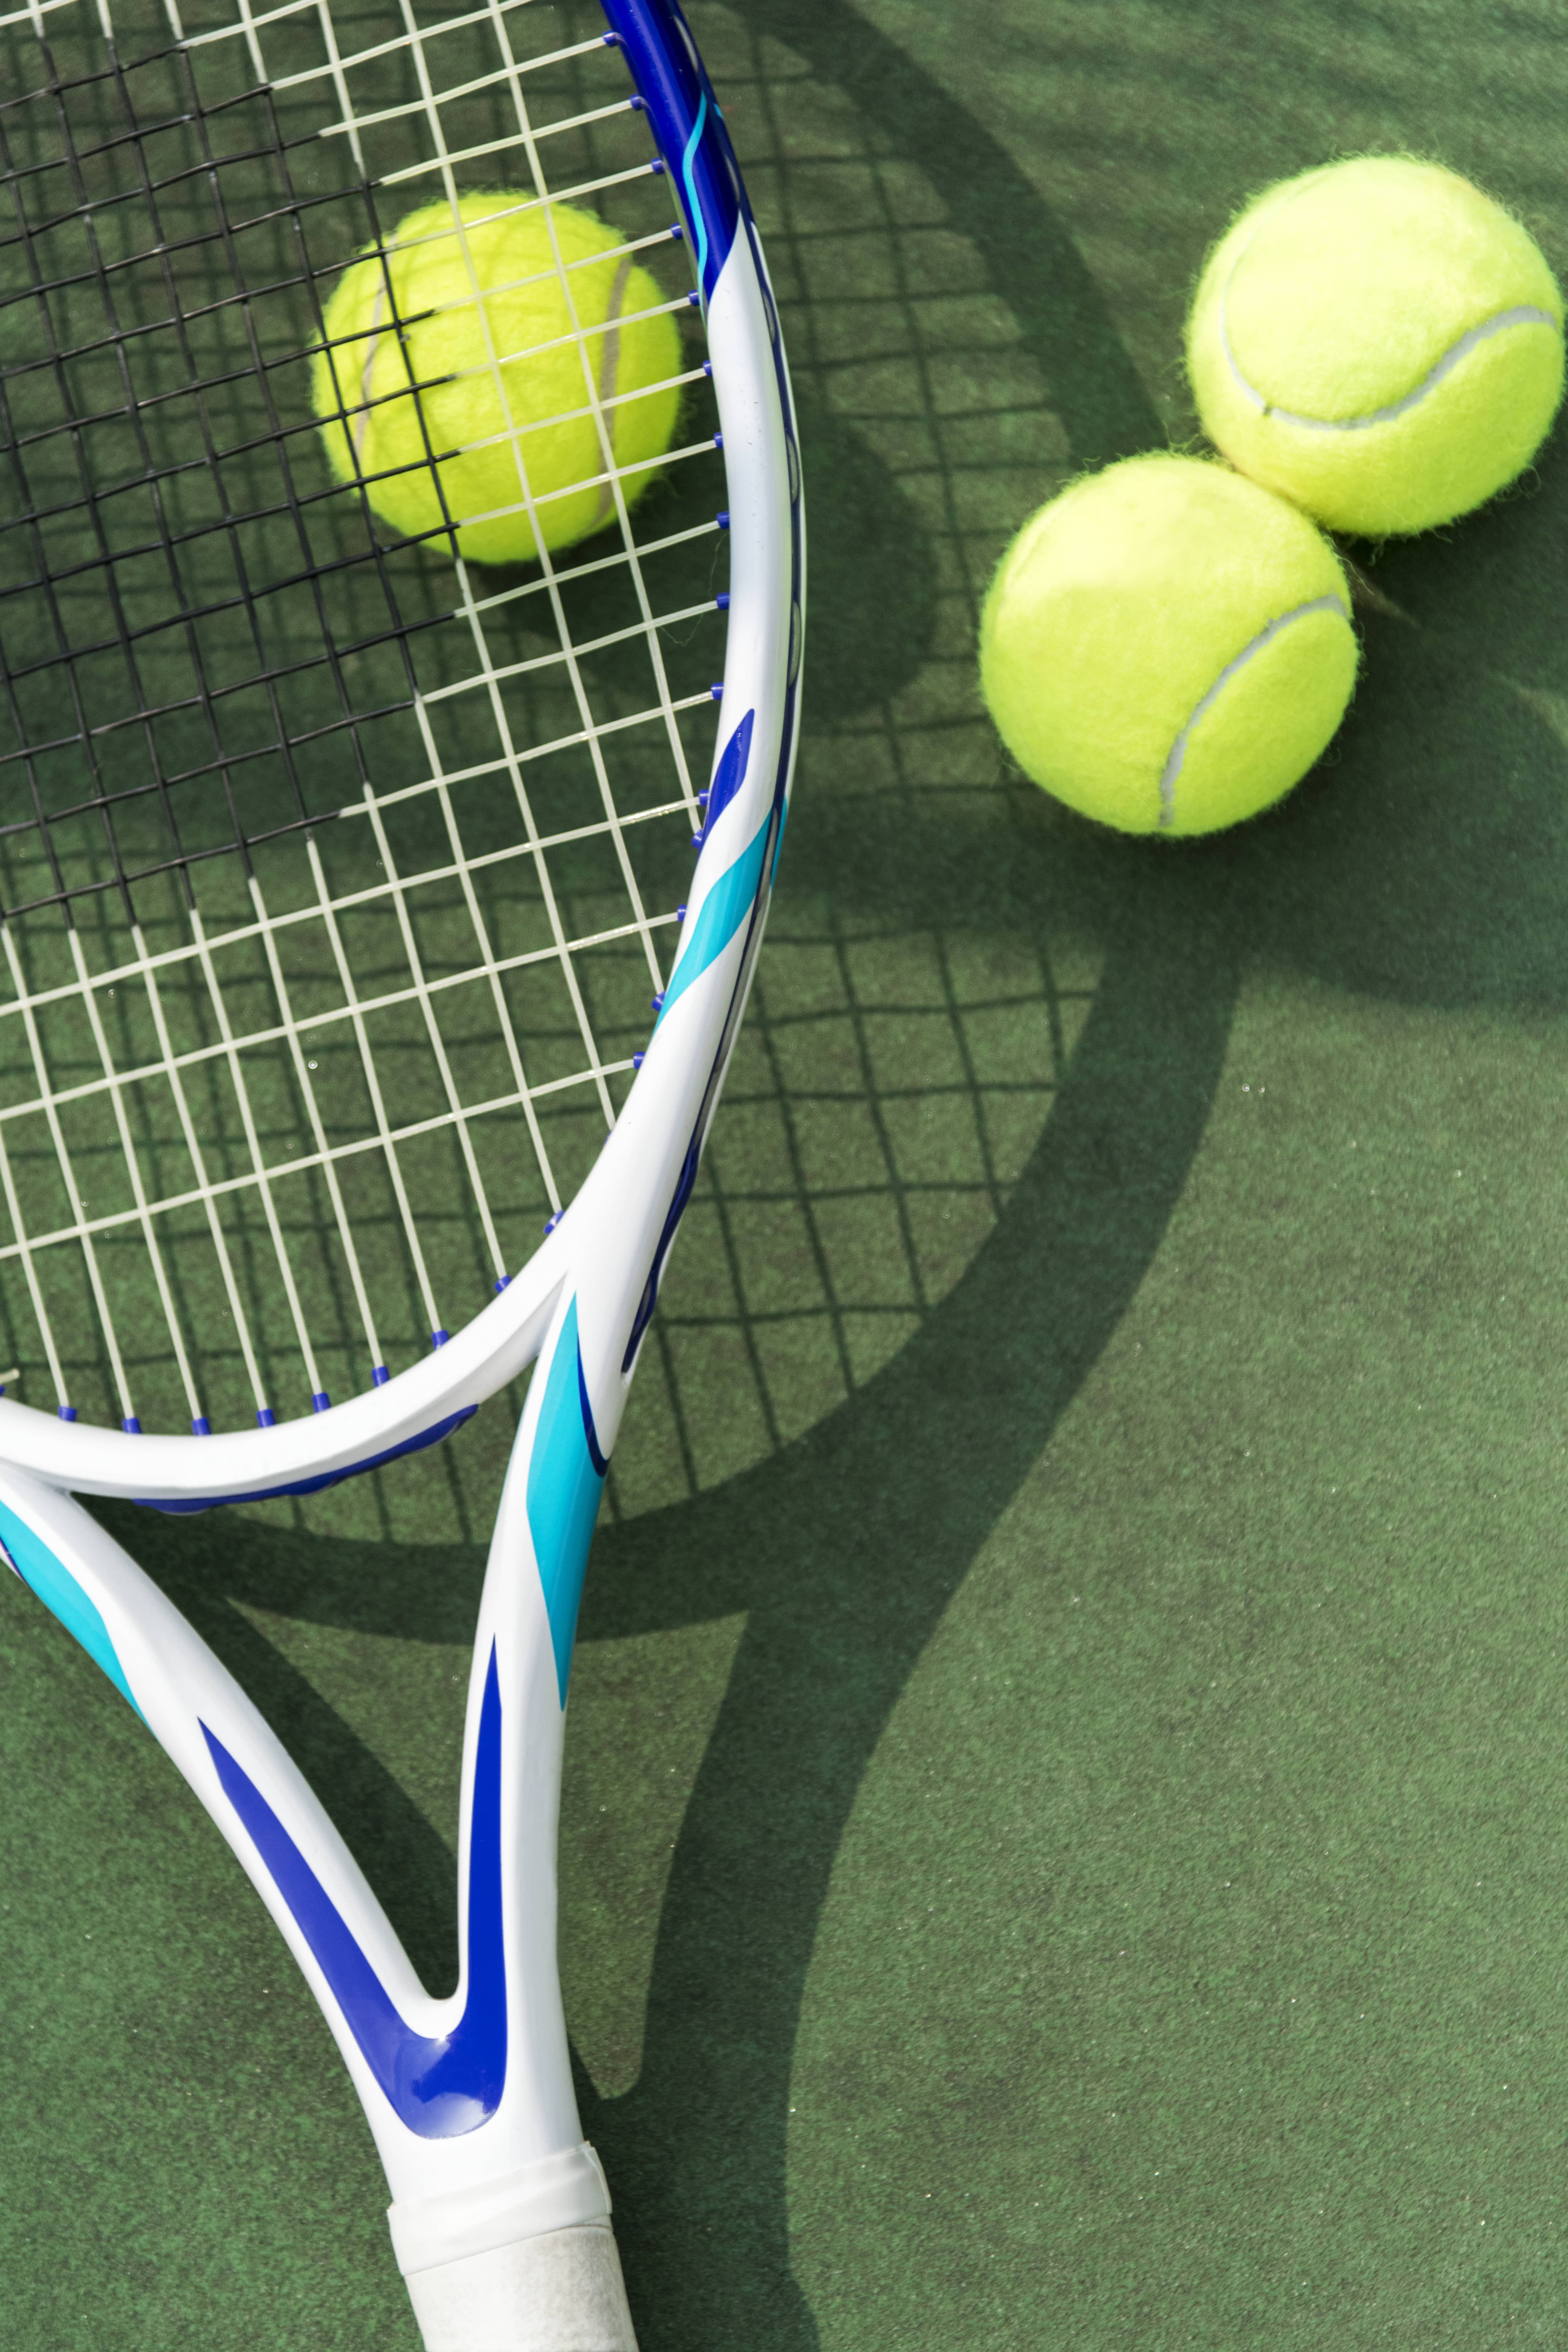 tennis-balls-on-a-tennis-court